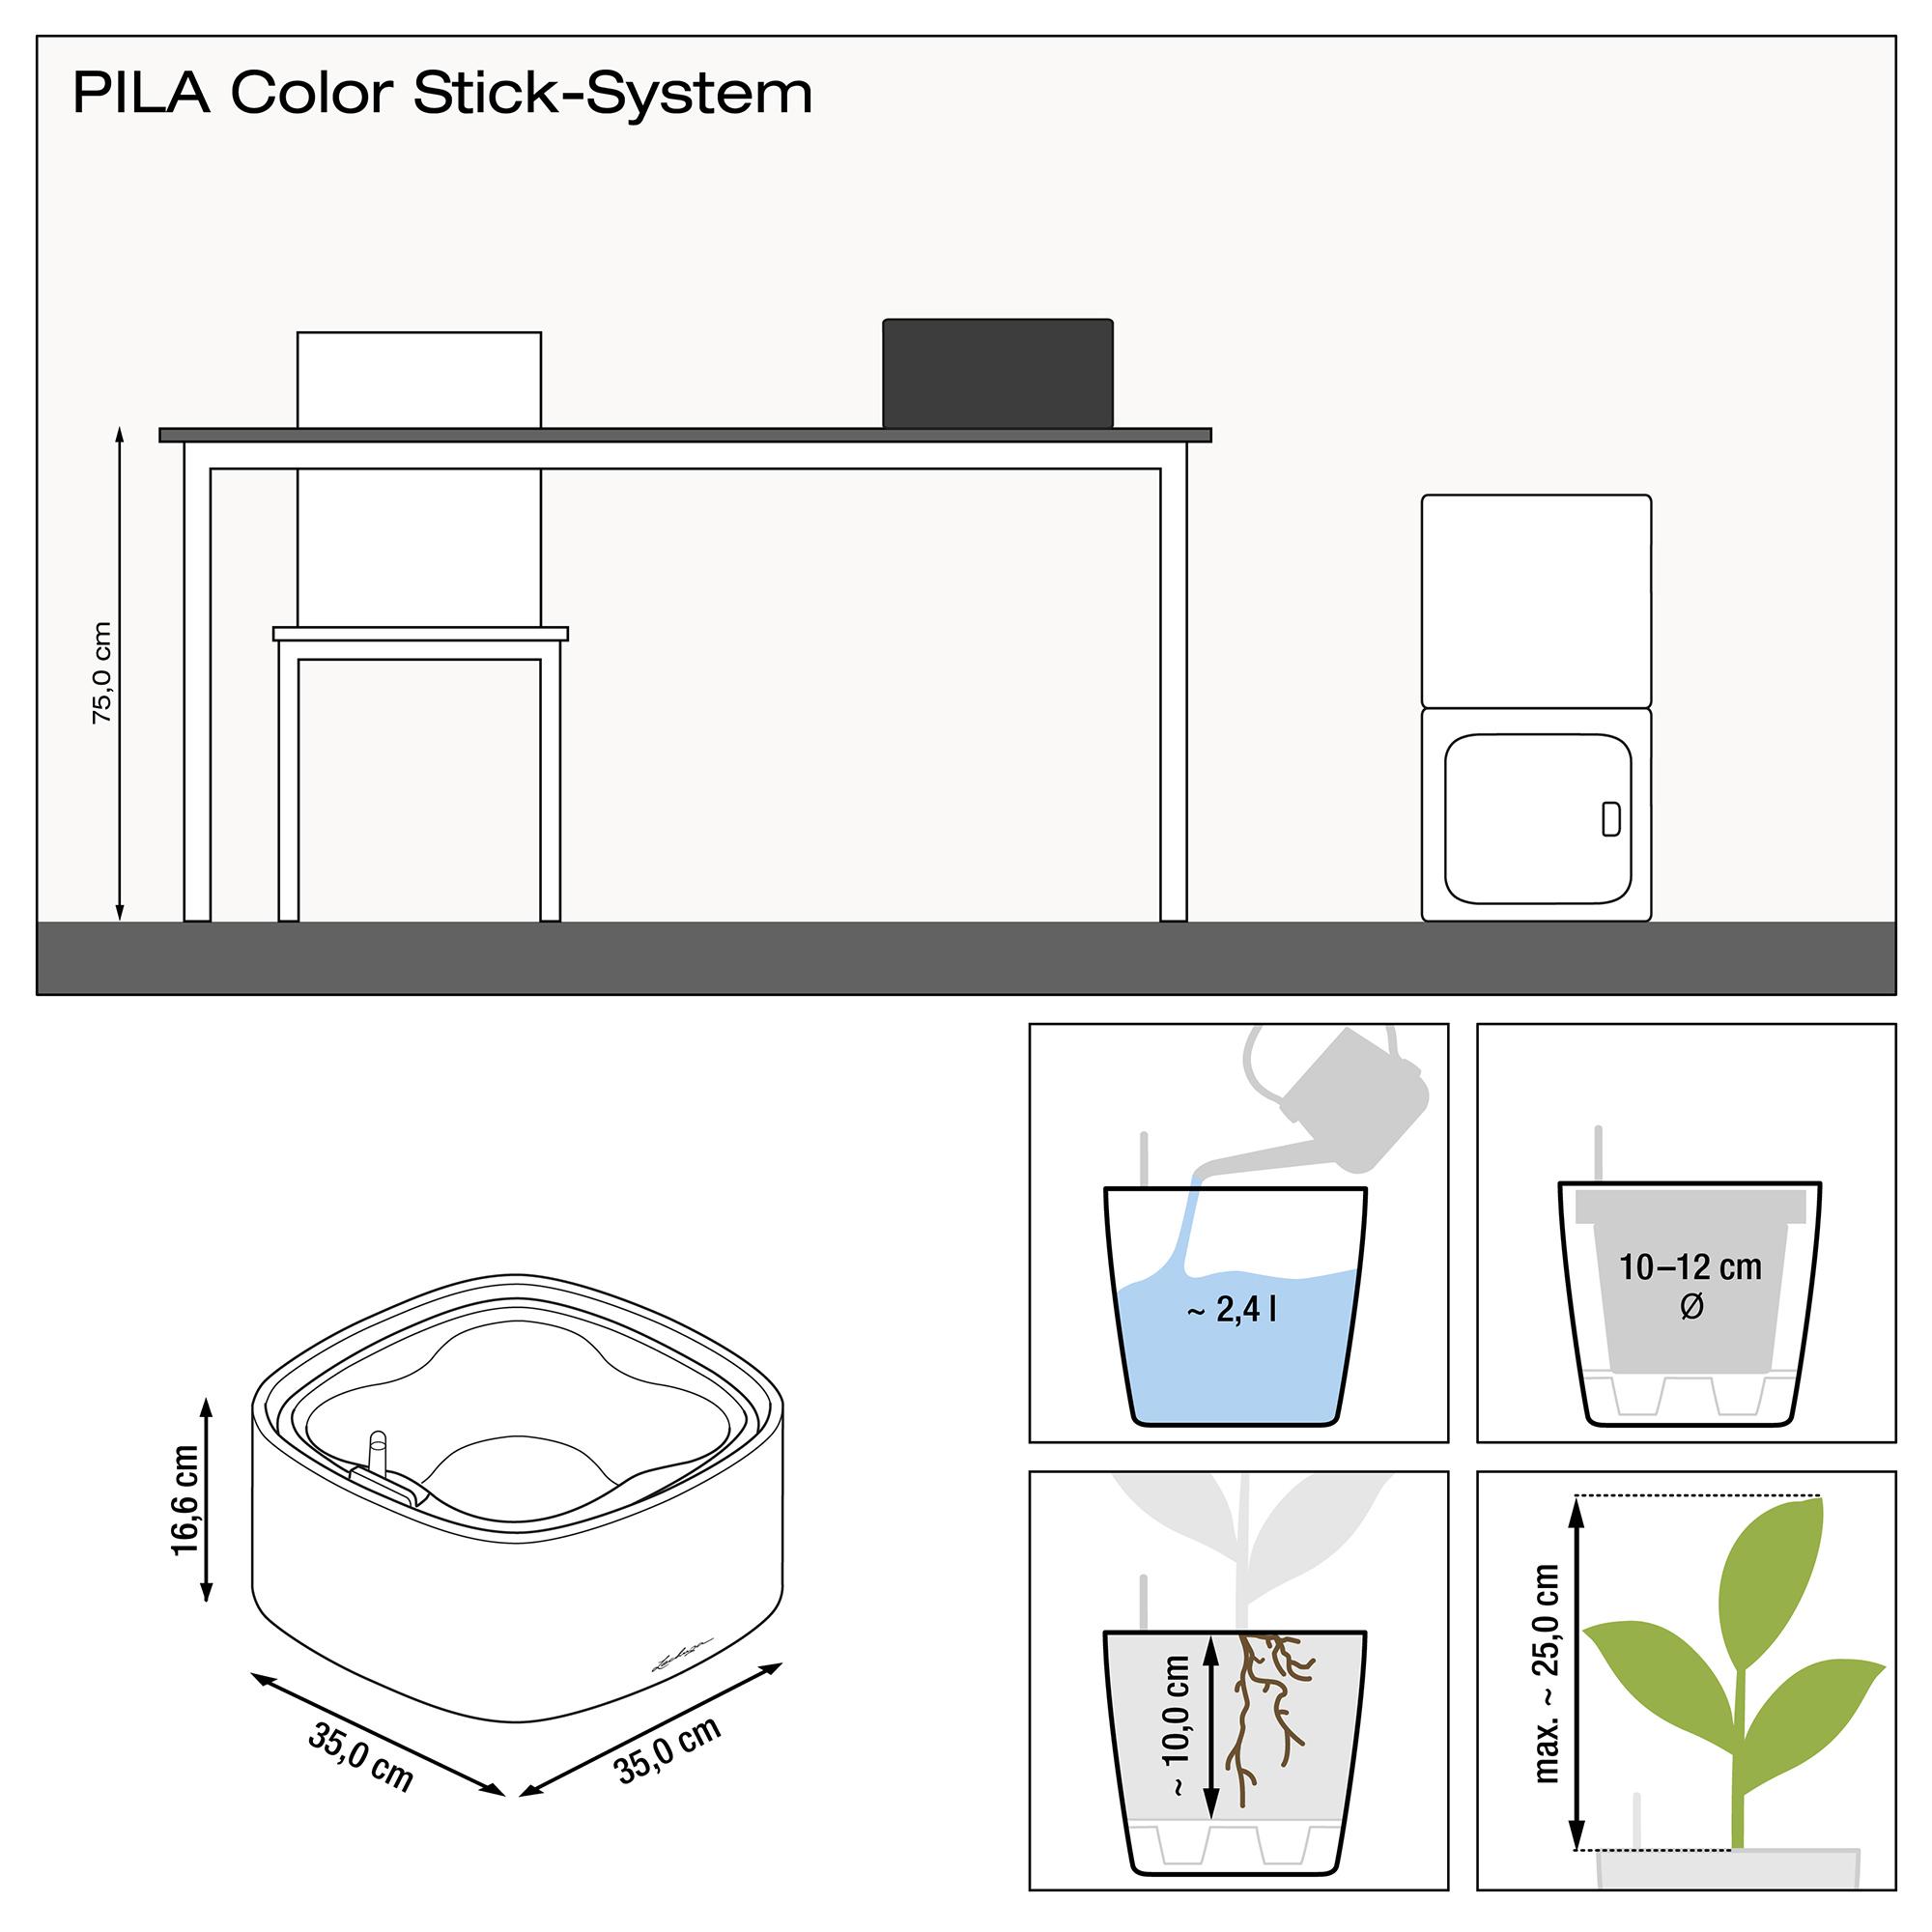 le_pila-color-stick35_product_addi_nz Thumb